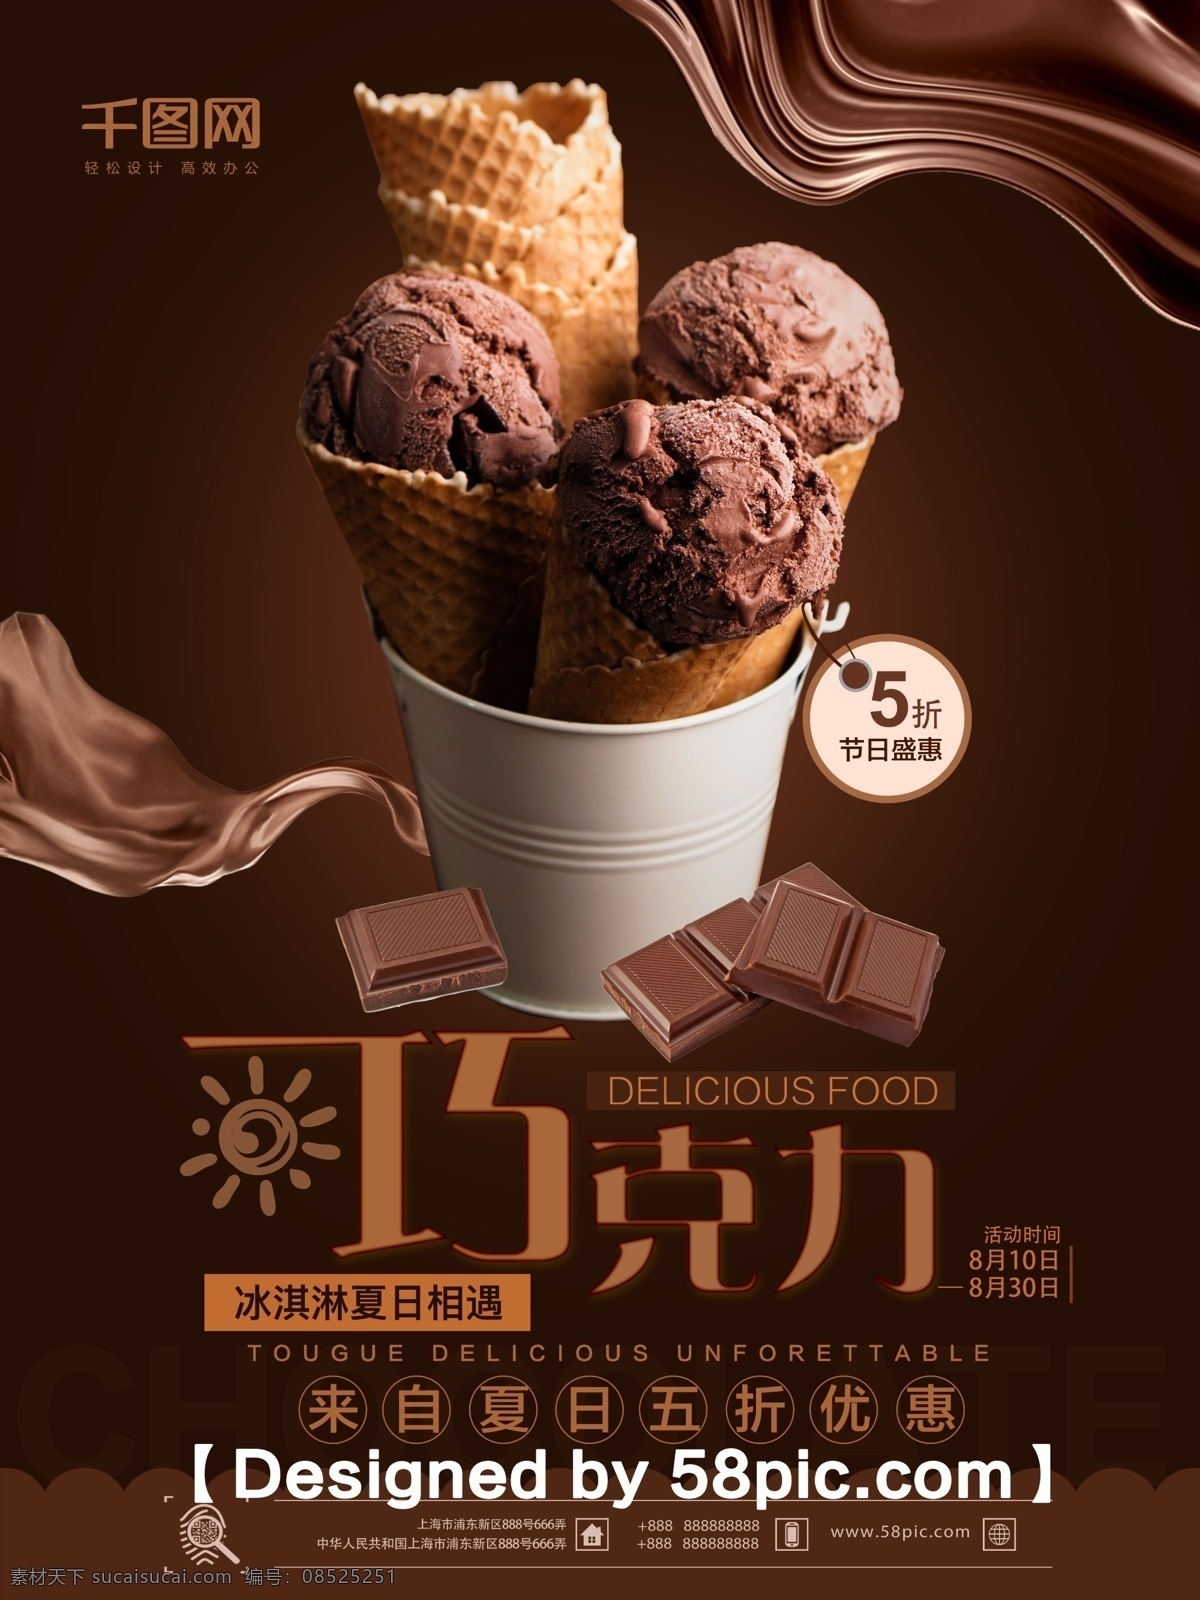 简约 大气 丝 滑 巧克力 冰淇淋 促销 海报 简约大气 psd素材 丝滑巧克力 冰沙 促销海报 新品上市 雪糕素材 广告设计模版 夏日推荐 美食海报